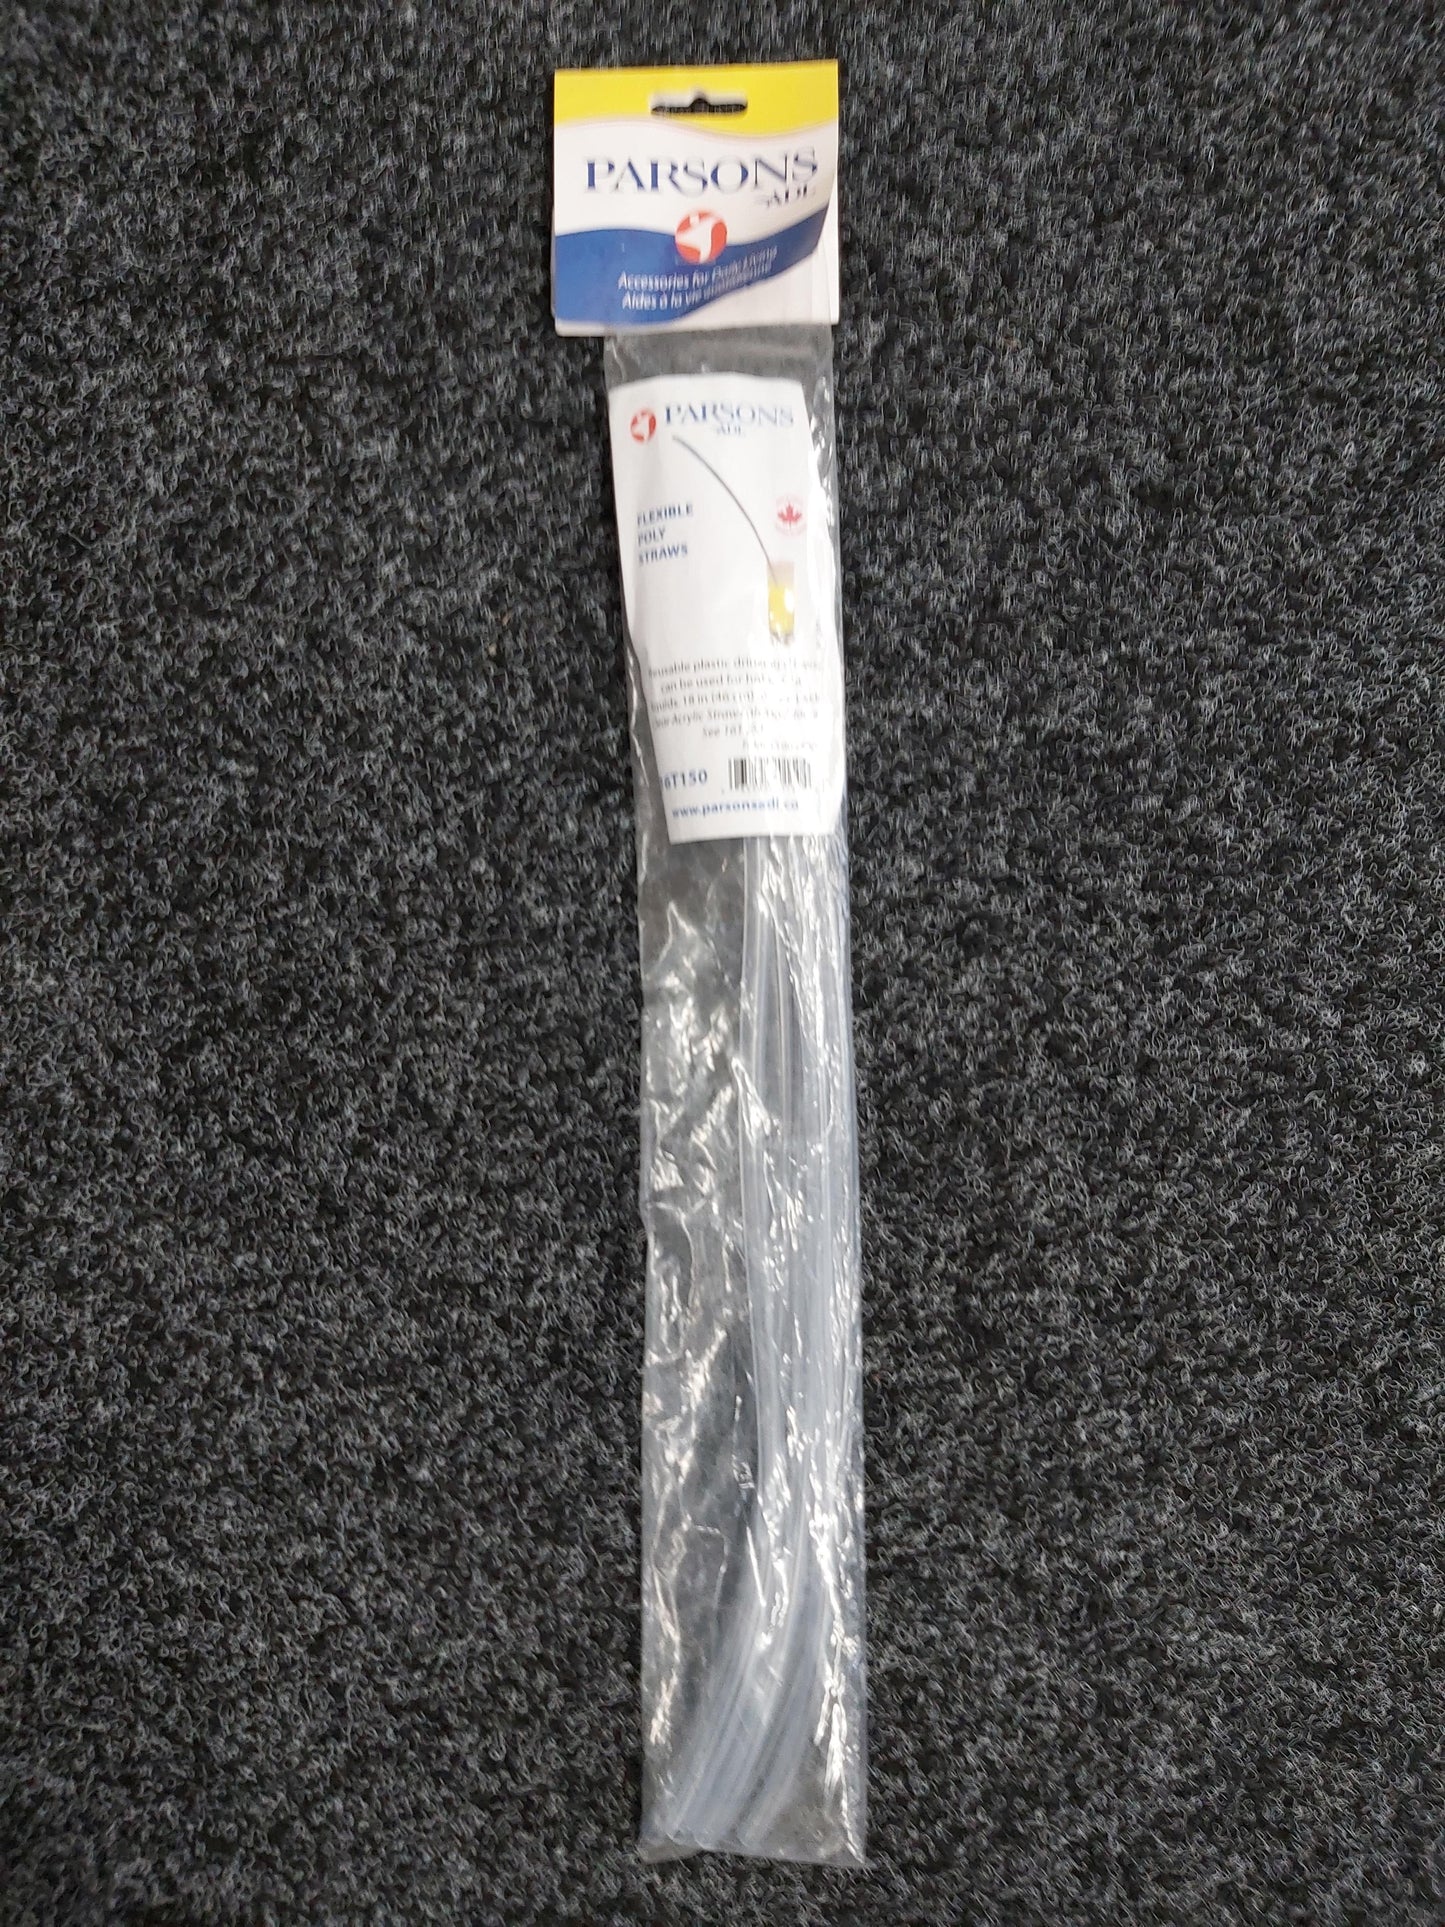 Flexible straw 6 pk (LIV-PA16T150)